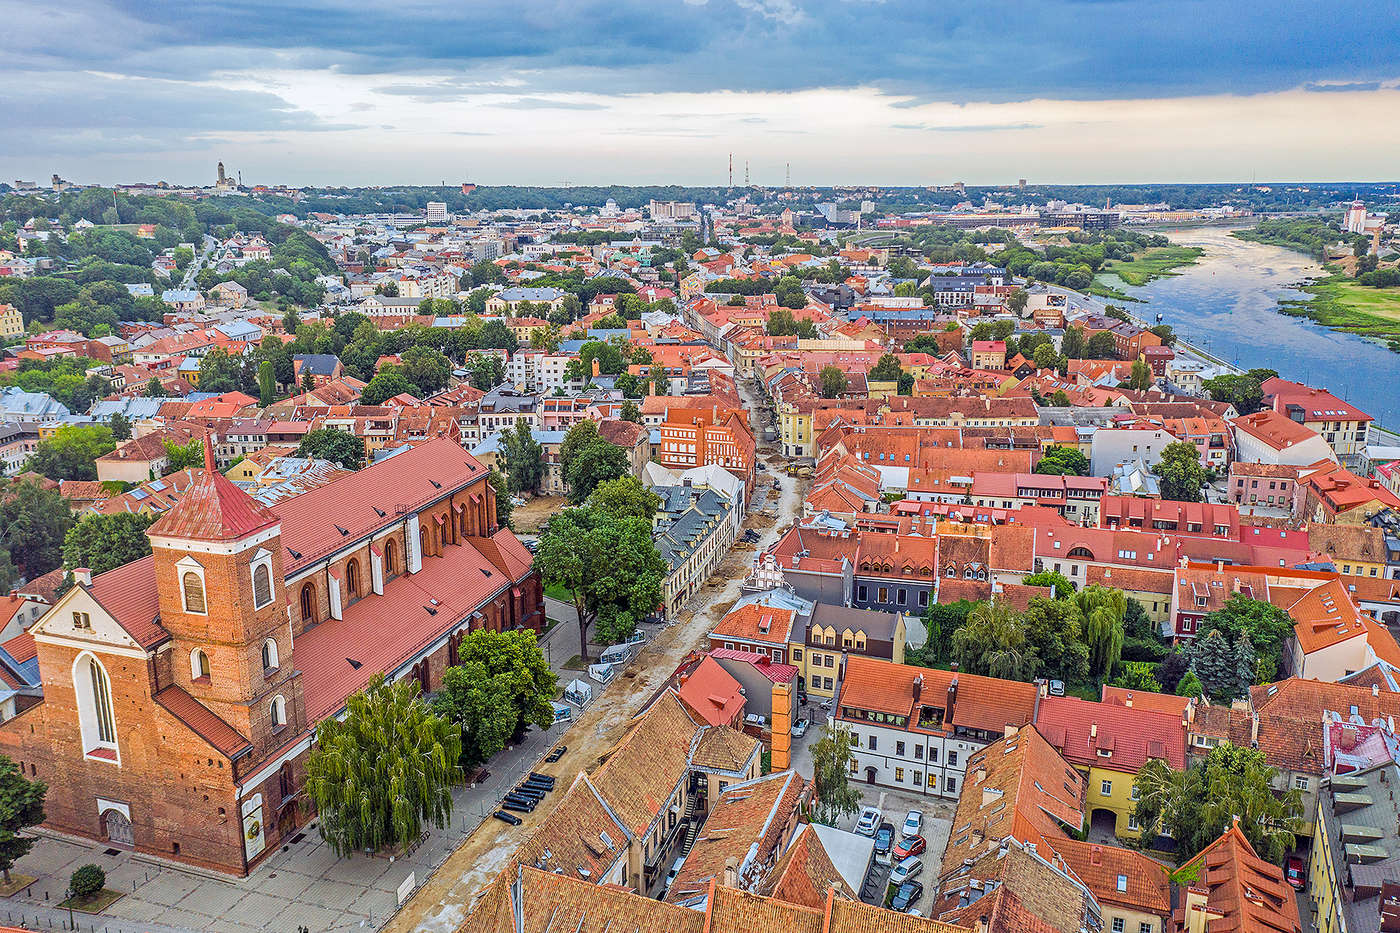 Discover your piece of Kaunas.